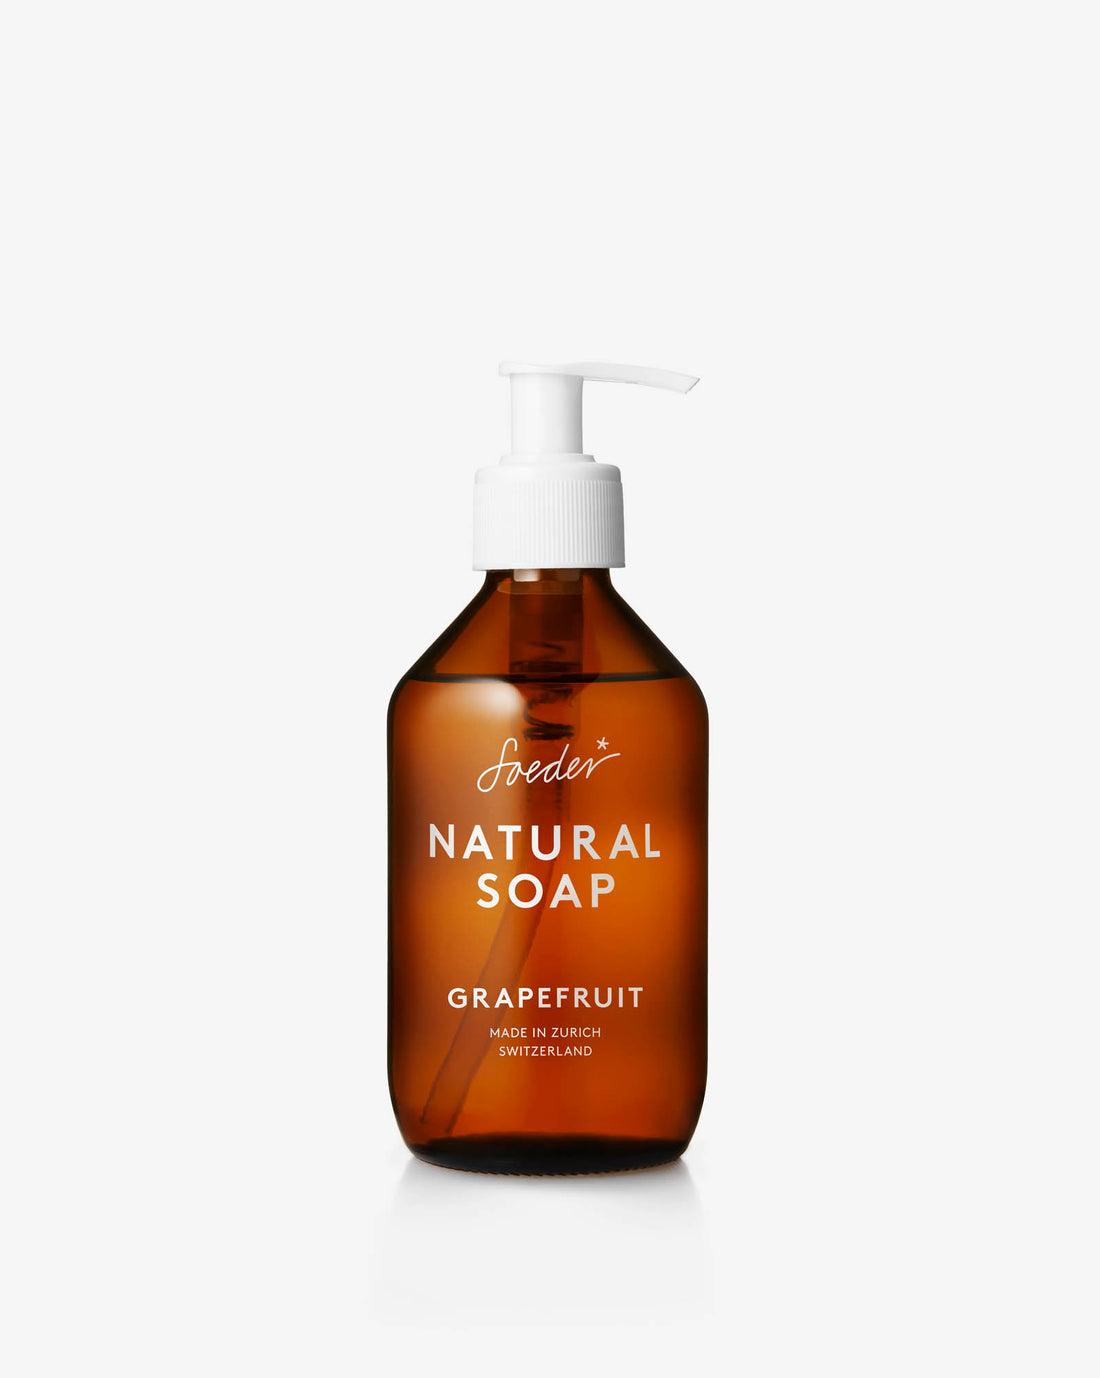 NATURAL SOAP GRAPEFRUIT - Soeder